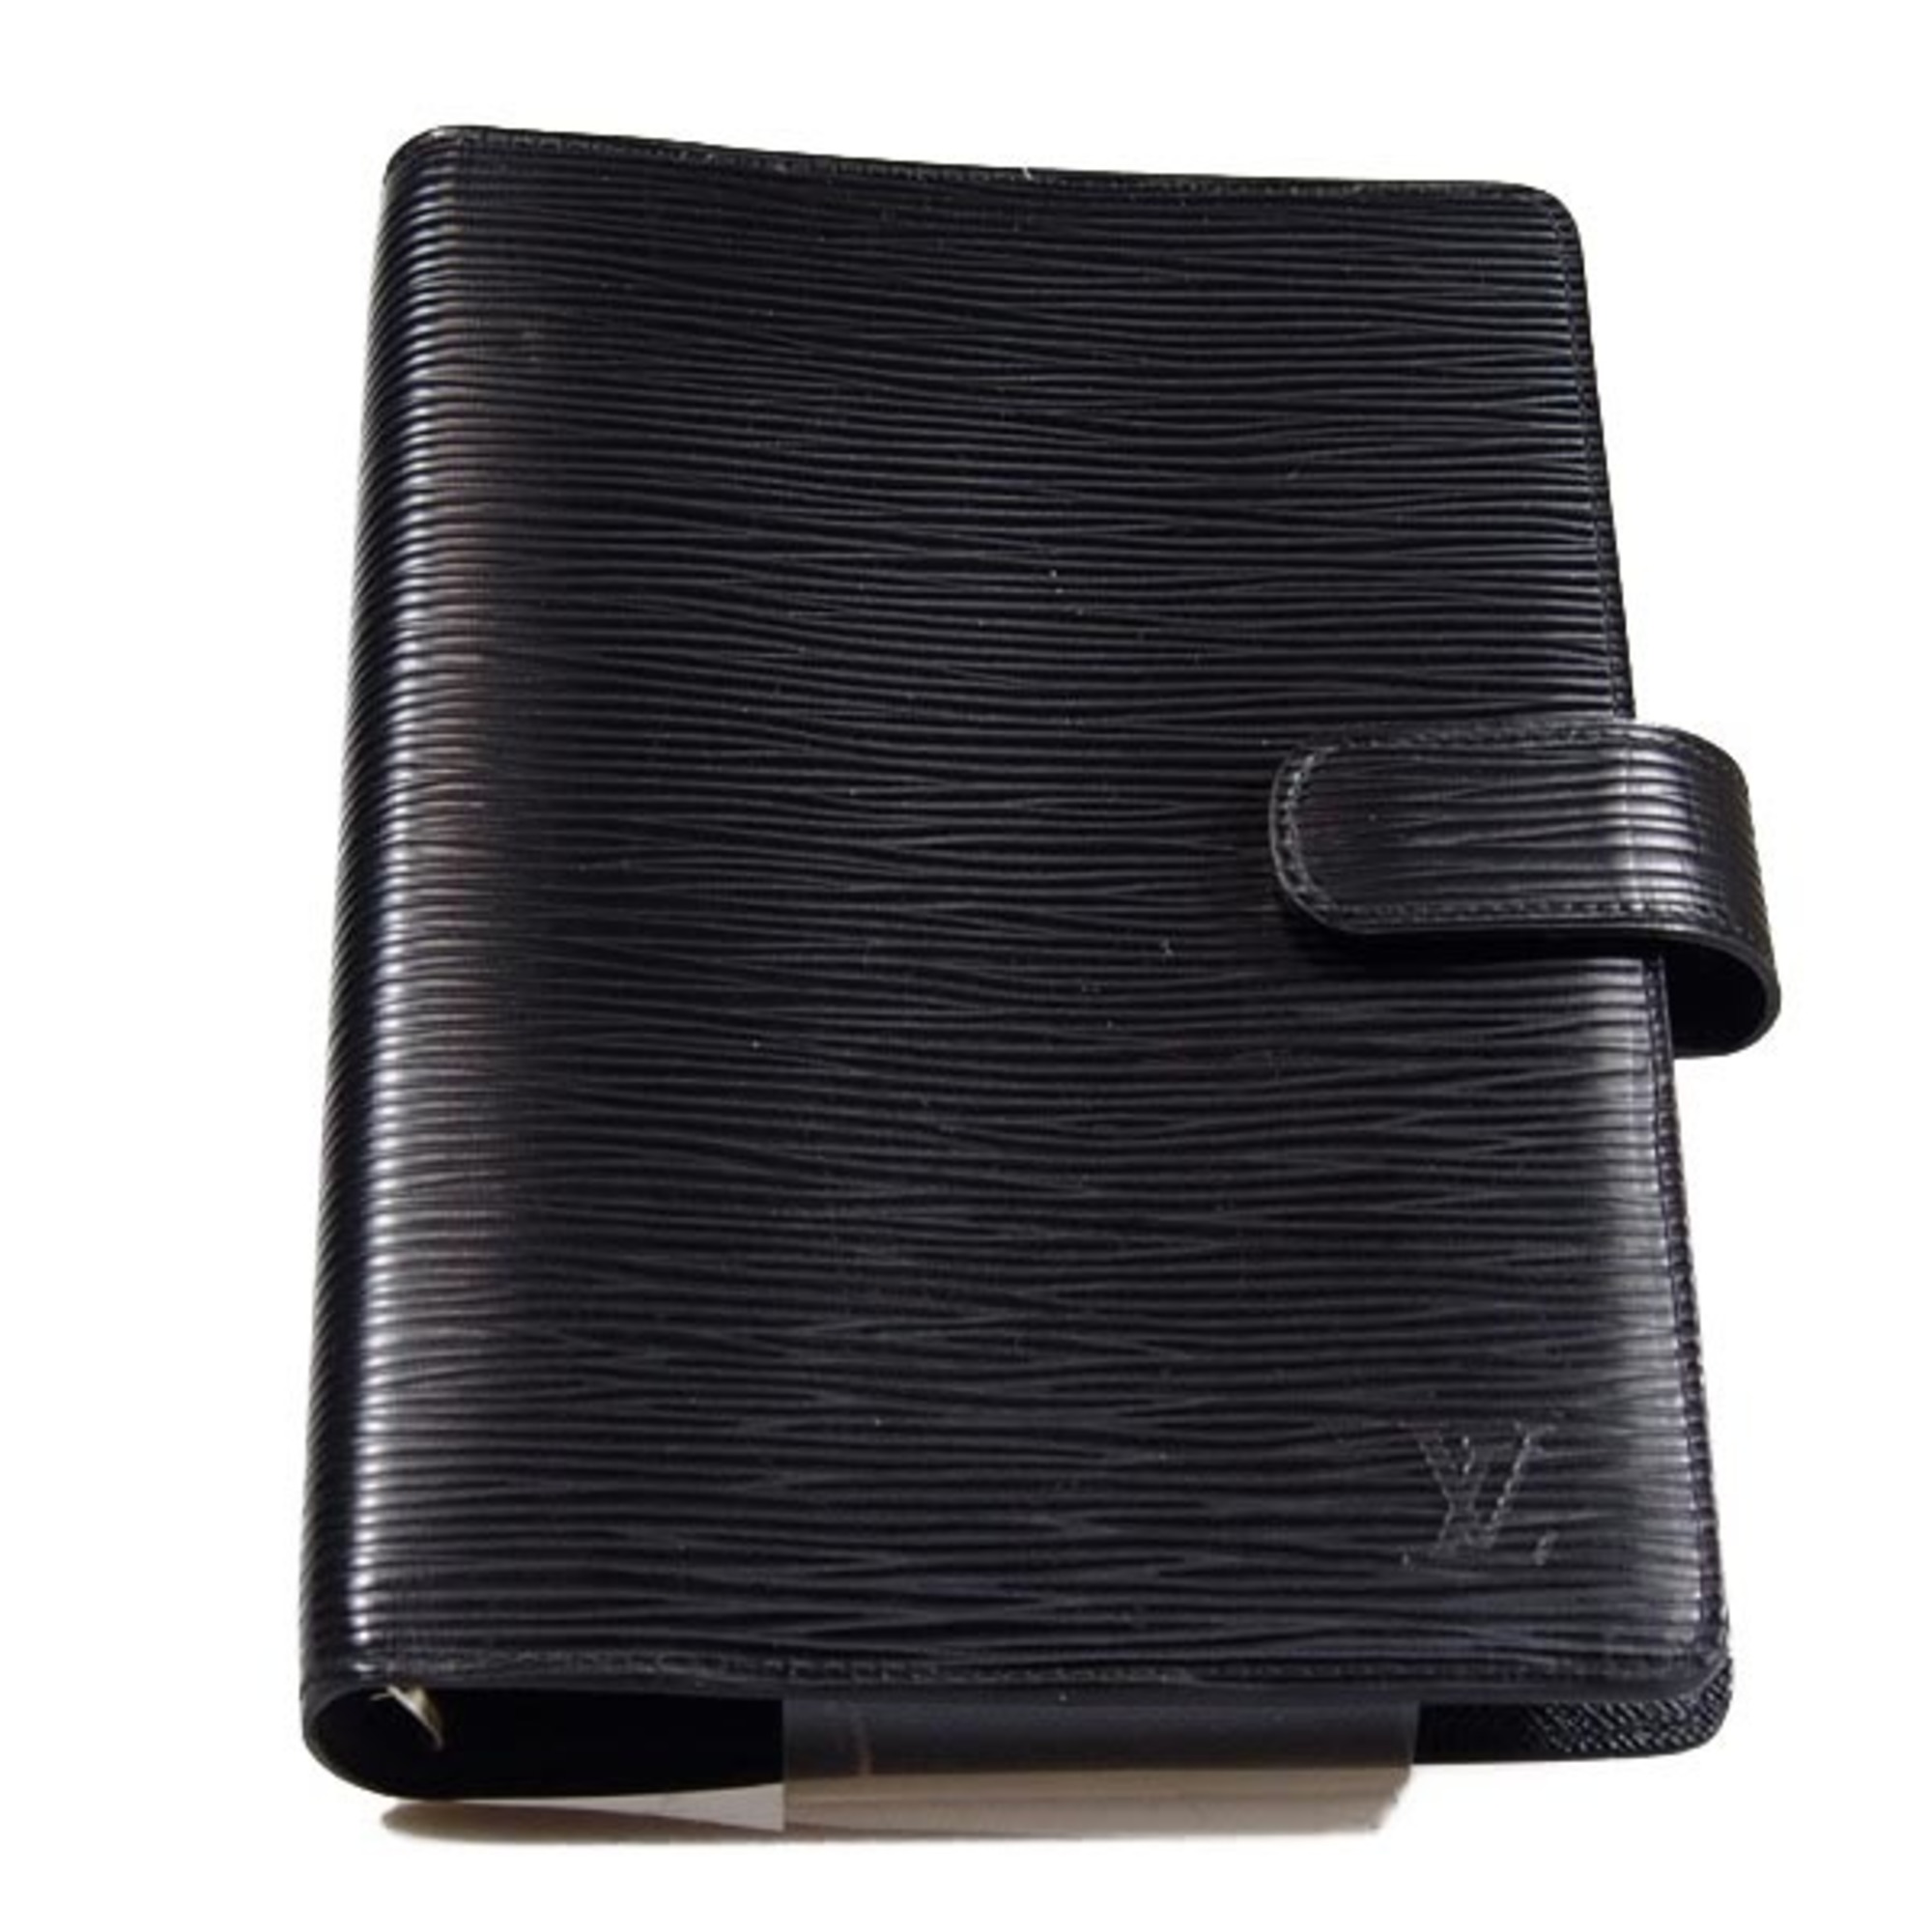 LOUIS VUITTON Agenda MM 6 Hole Epi System Notebook Cover R20042 Louis Vuitton Noir LV